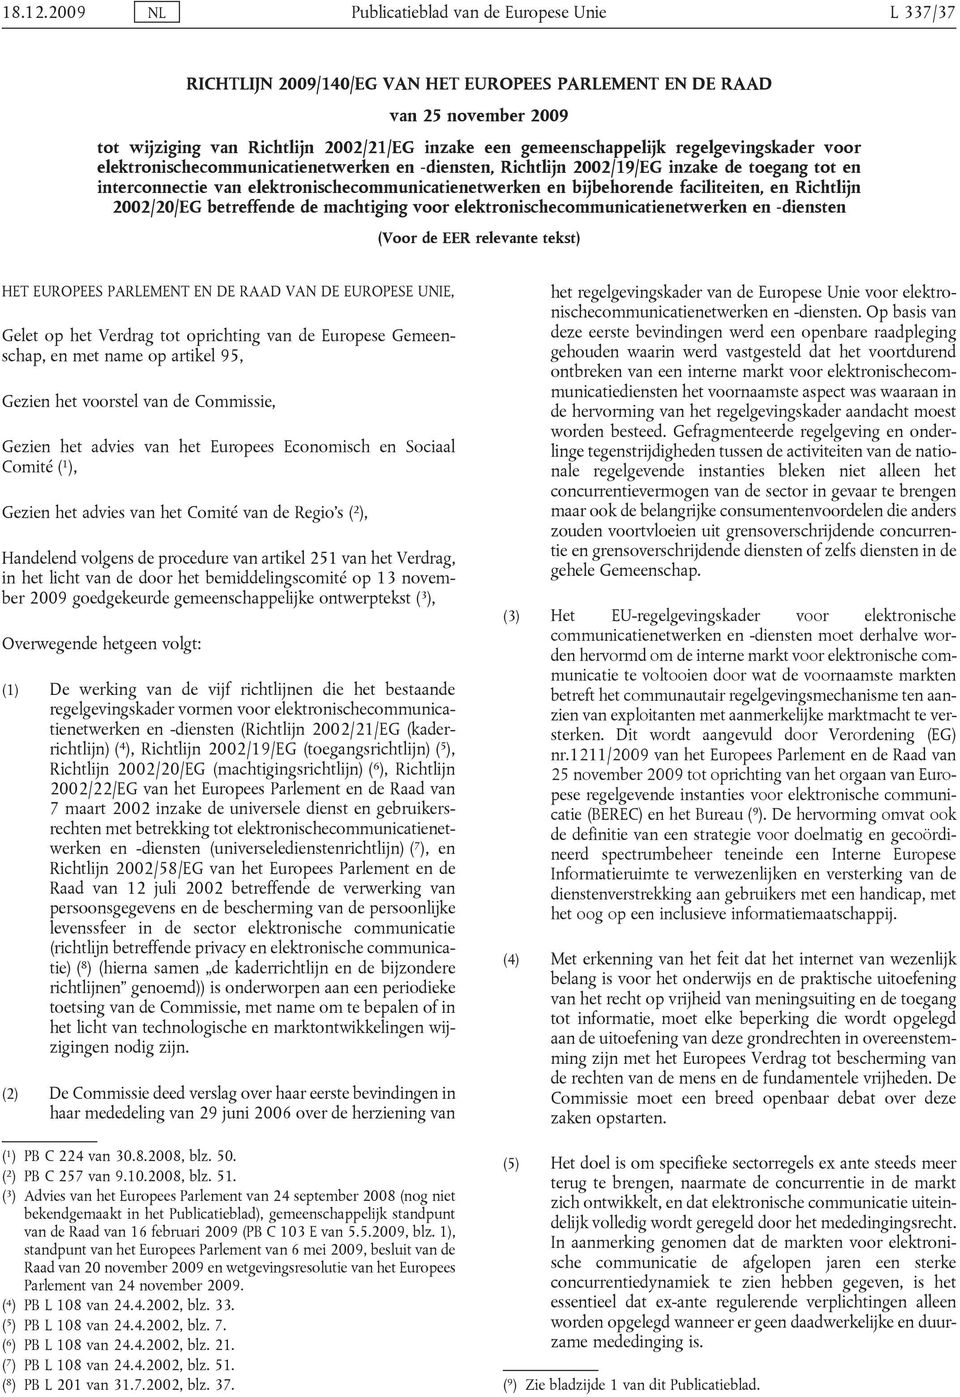 faciliteiten, en Richtlijn 2002/20/EG betreffende de machtiging voor elektronischecommunicatienetwerken en -diensten (Voor de EER relevante tekst) HET EUROPEES PARLEMENT EN DE RAAD VAN DE EUROPESE